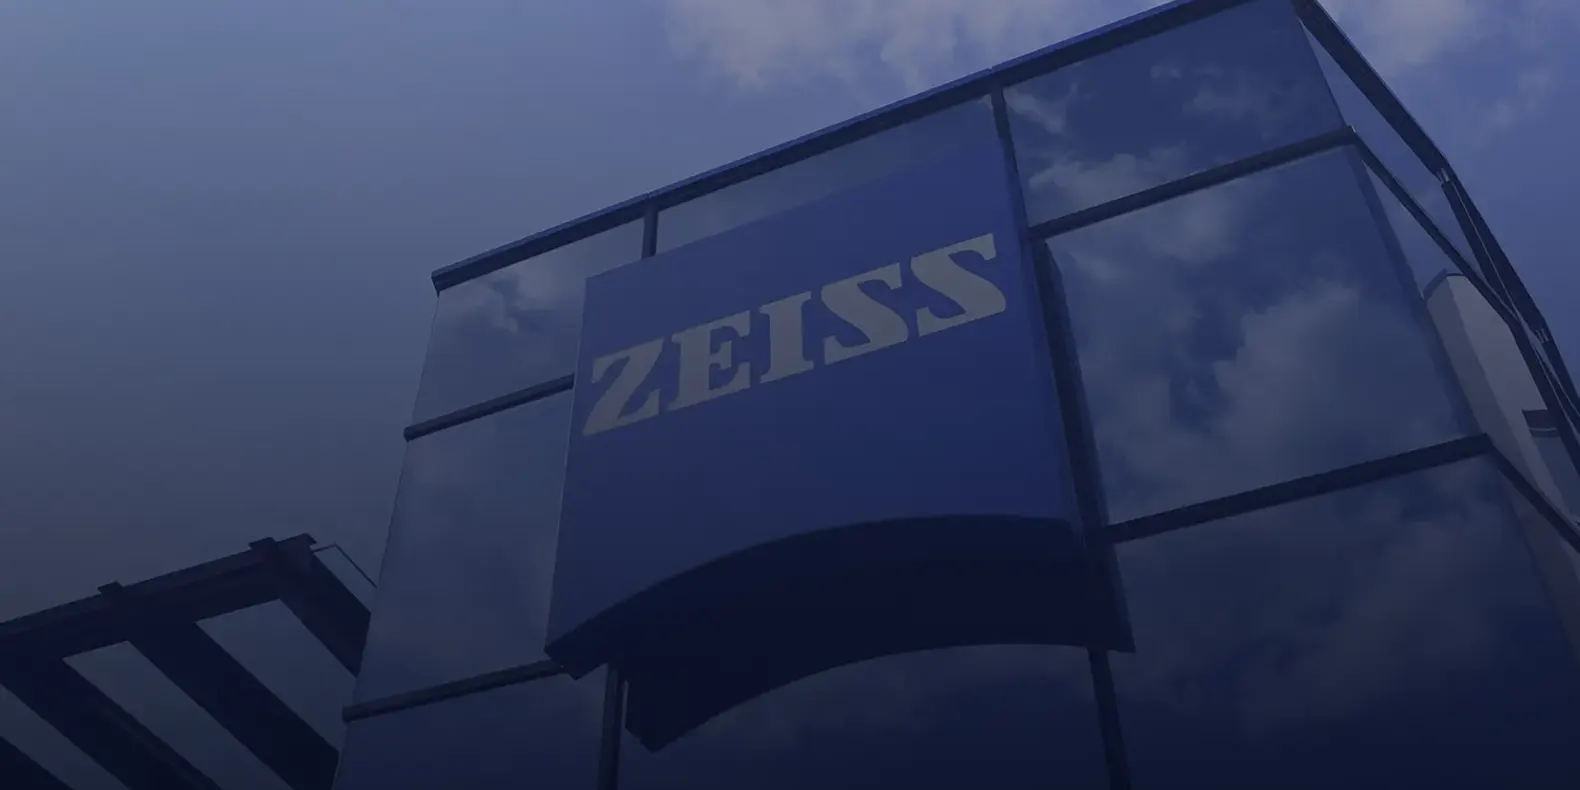 Miniatura HE ZEISS - Con una estrategia de RP con enfoque de comunicación integrada, ZEISS IQS conquista el mercado industrial de Tijuana